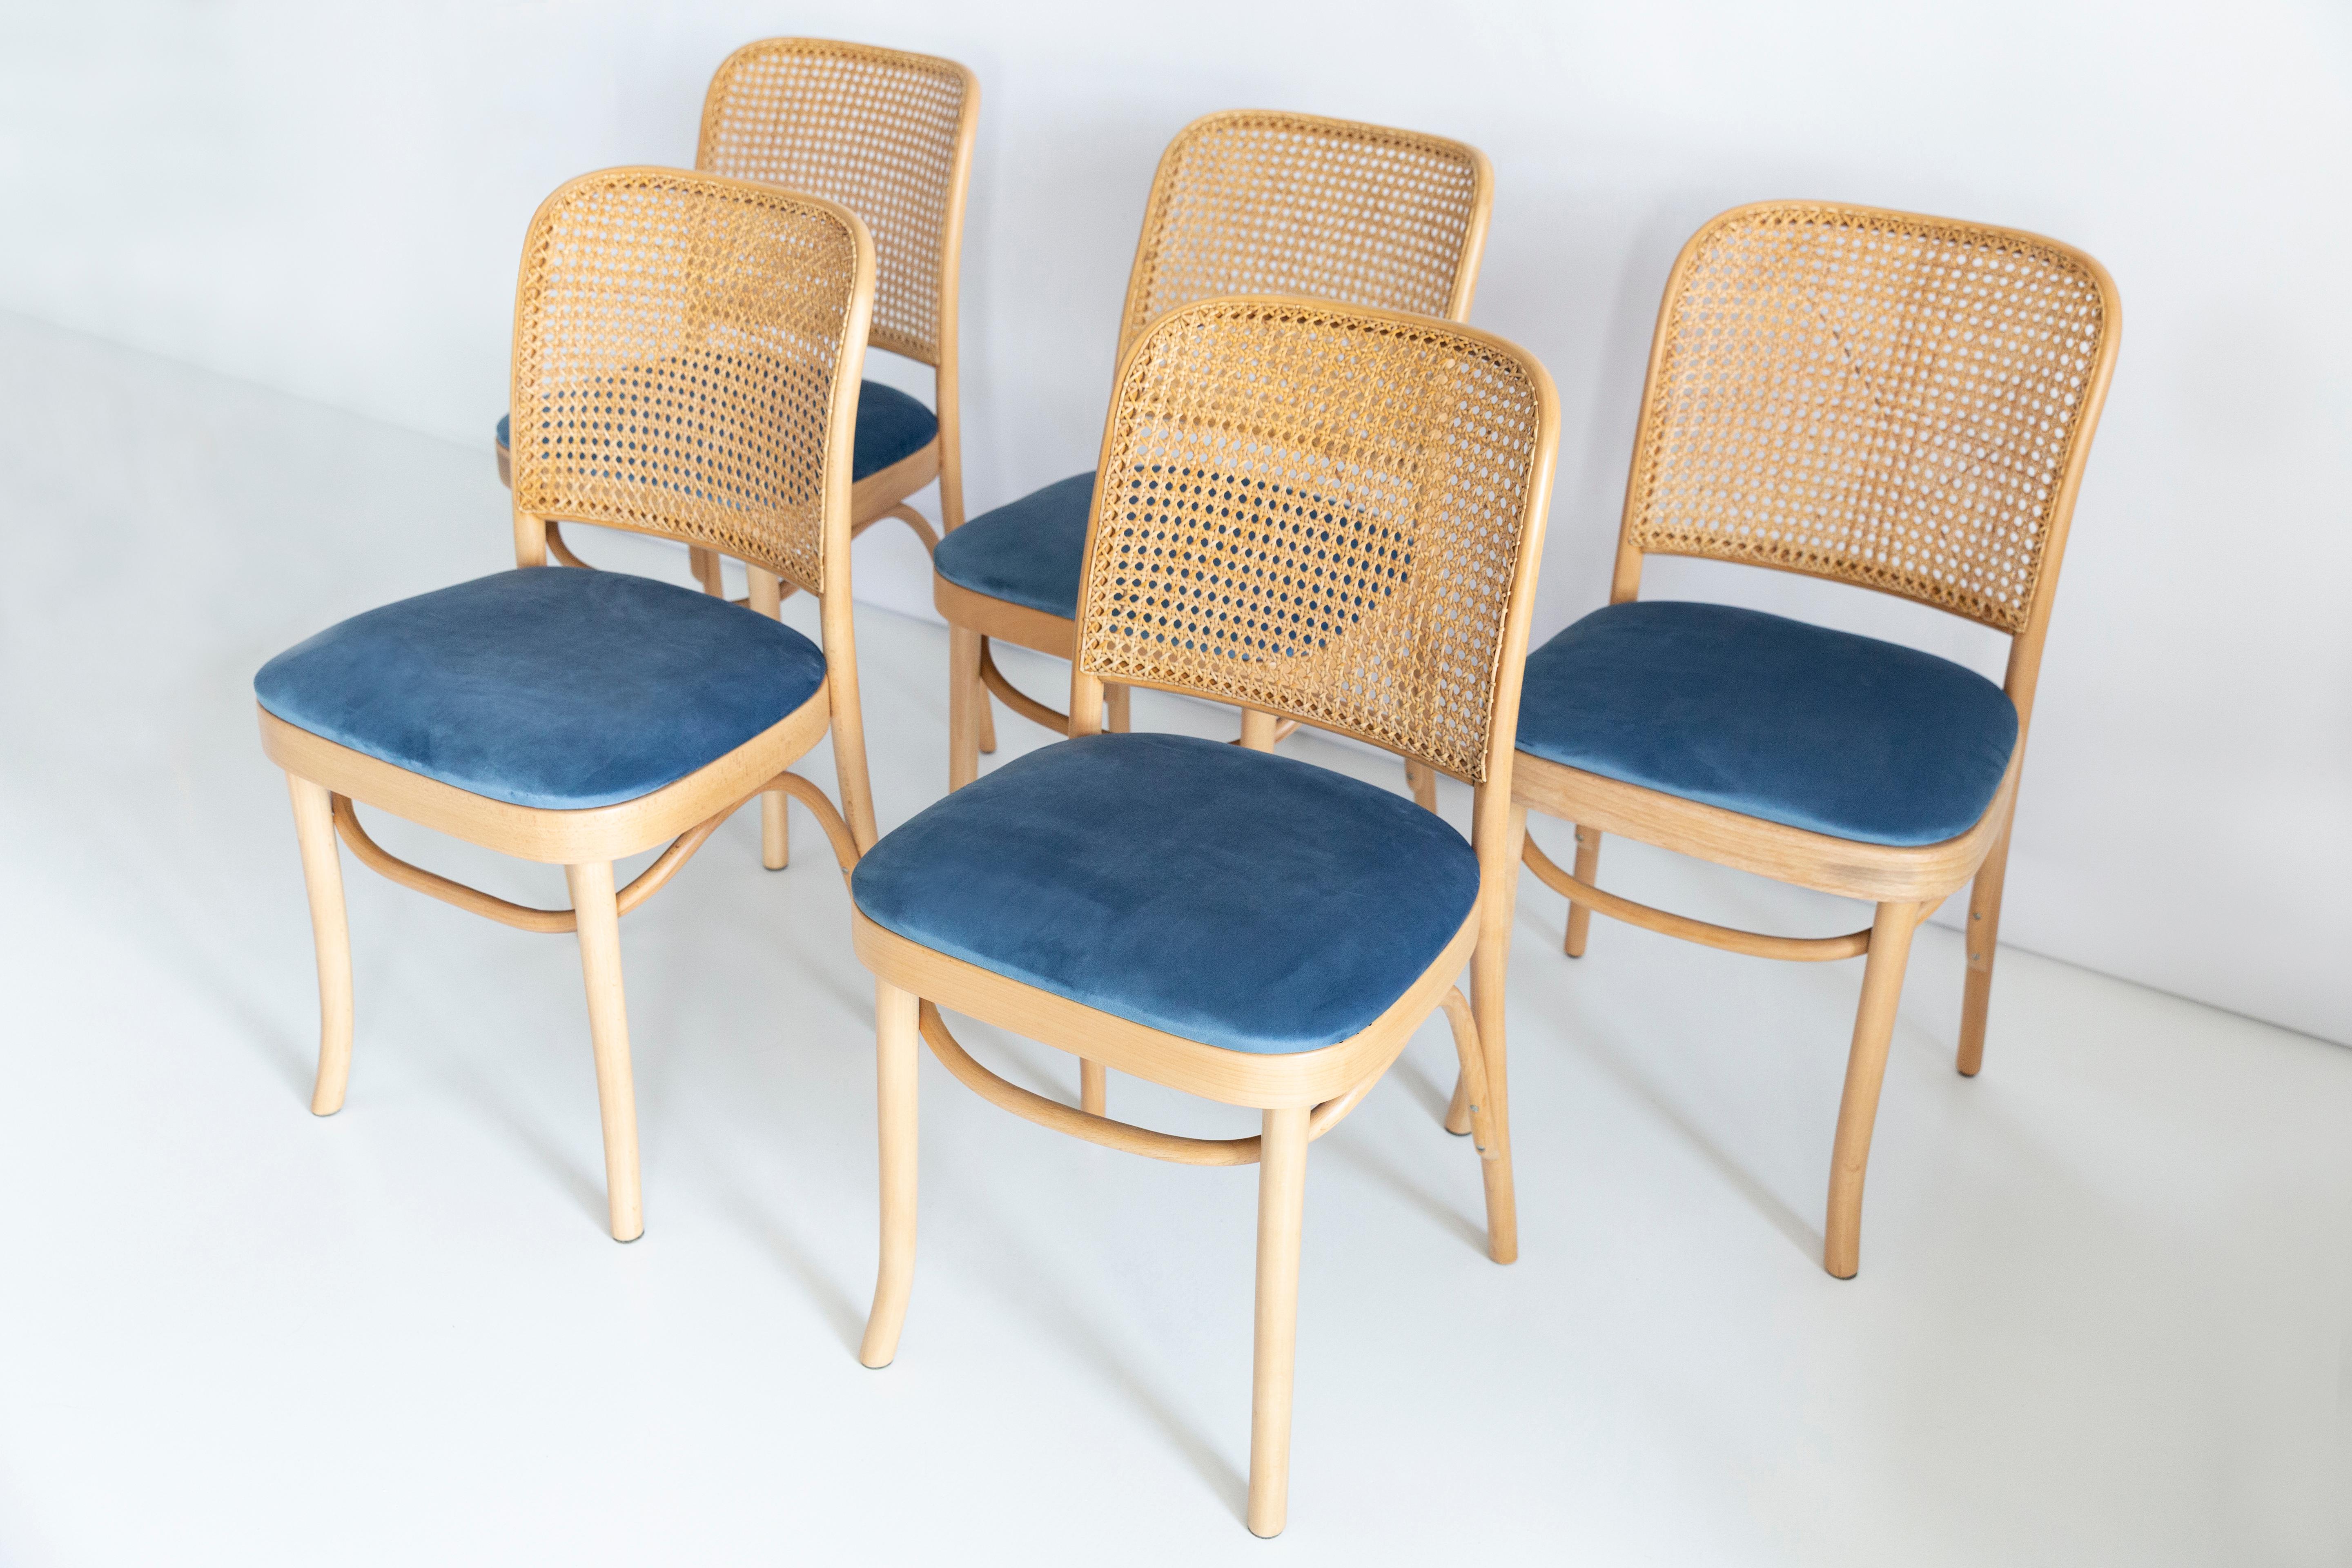 Un ensemble de 5 chaises en rotin et en bois. Le mobilier a été conçu par Helena et Jerzy Kurmanowicz. Elles ont été produites dans l'usine de menuiserie Thonet et nous les avons entièrement rénovées. La construction est en bois de hêtre teinté à